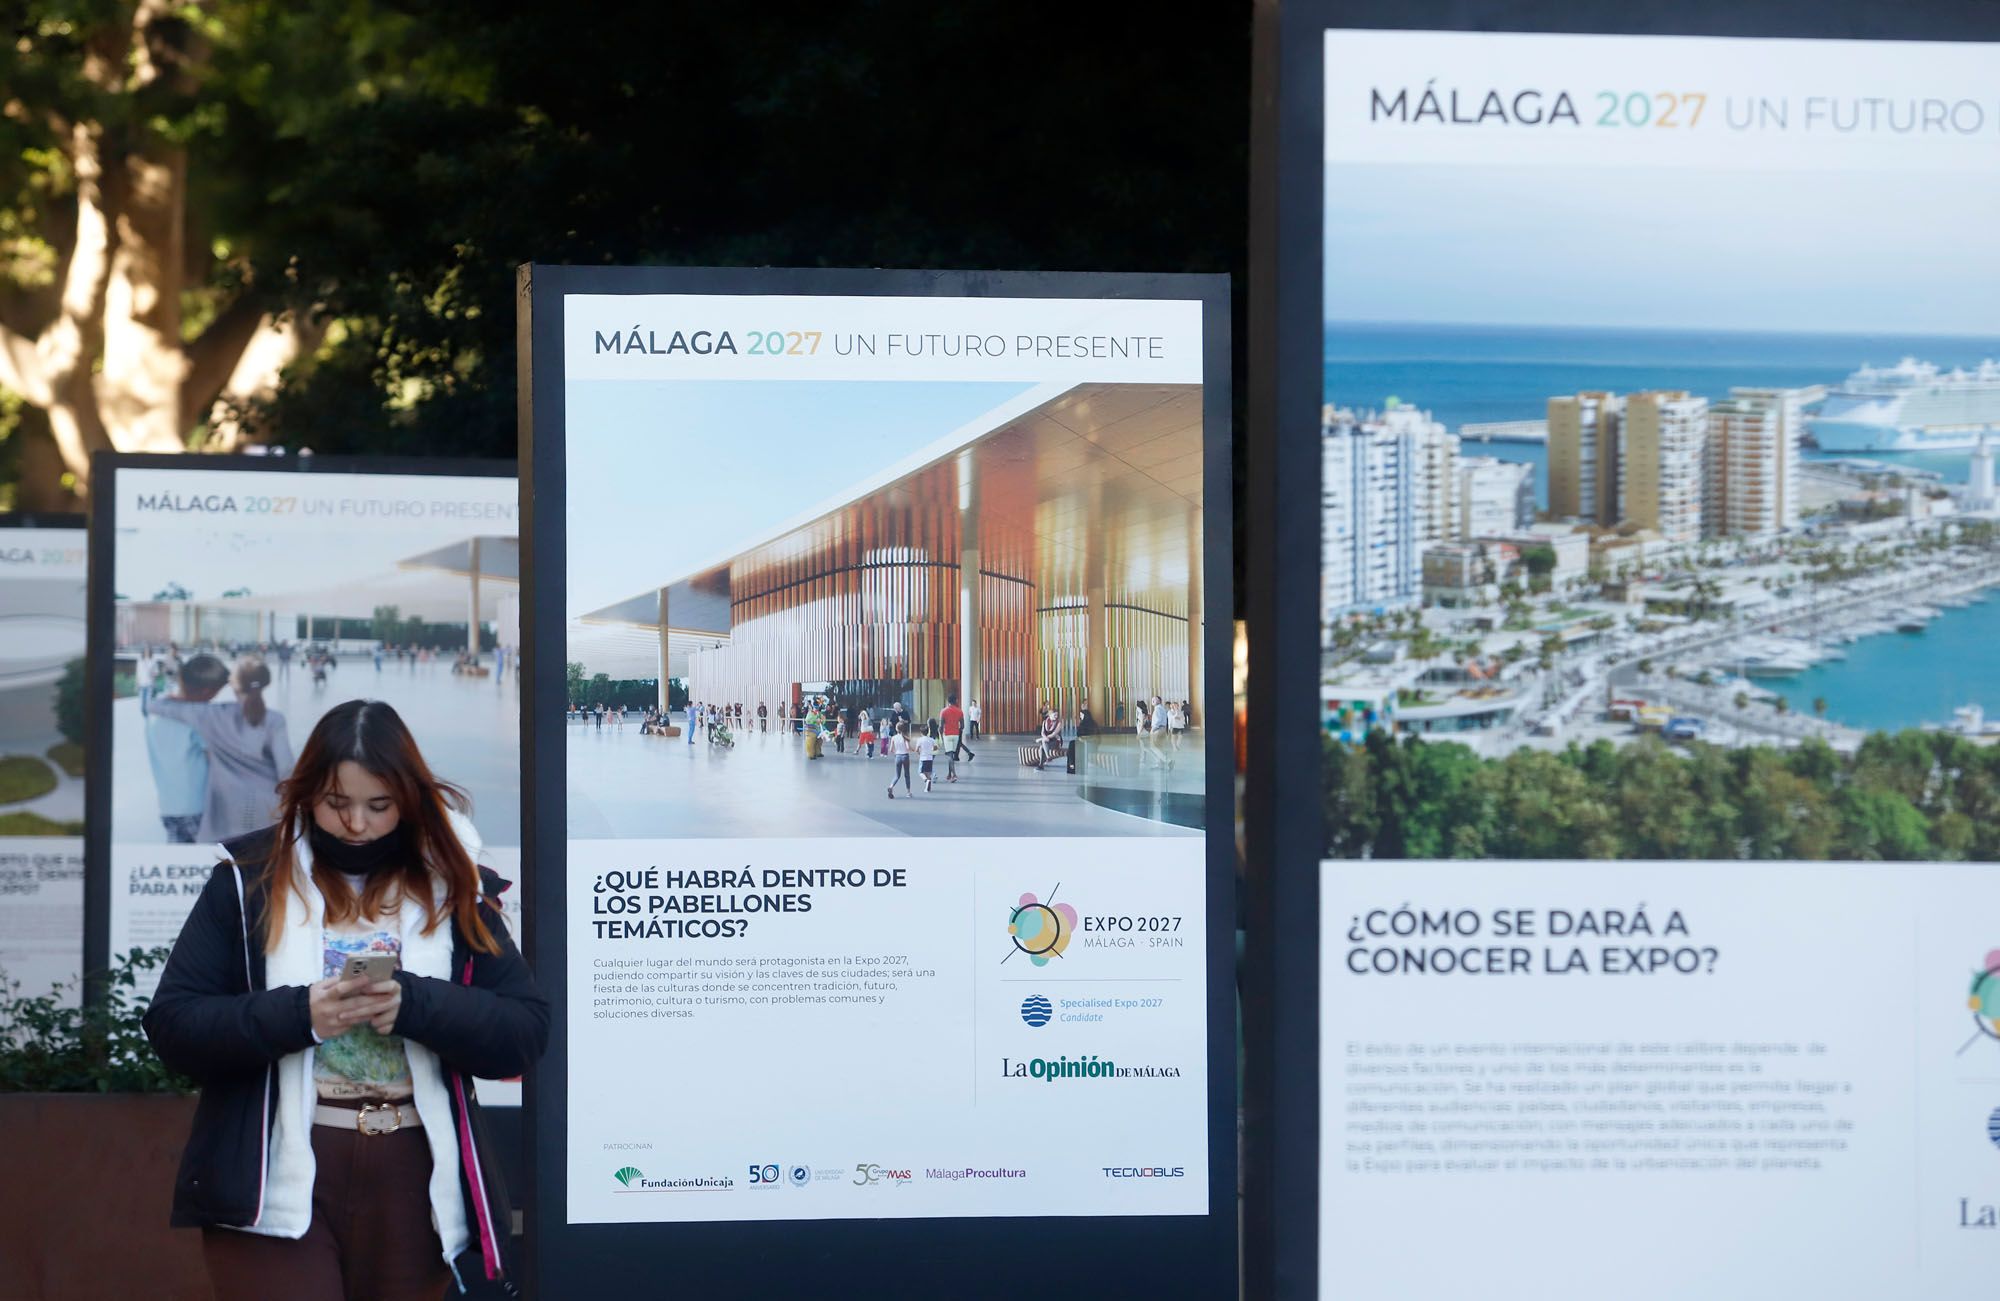 Exposición 'Málaga 2027 Un Futuro Presente', organizada por La Opinión, en la Alameda y la calle Larios